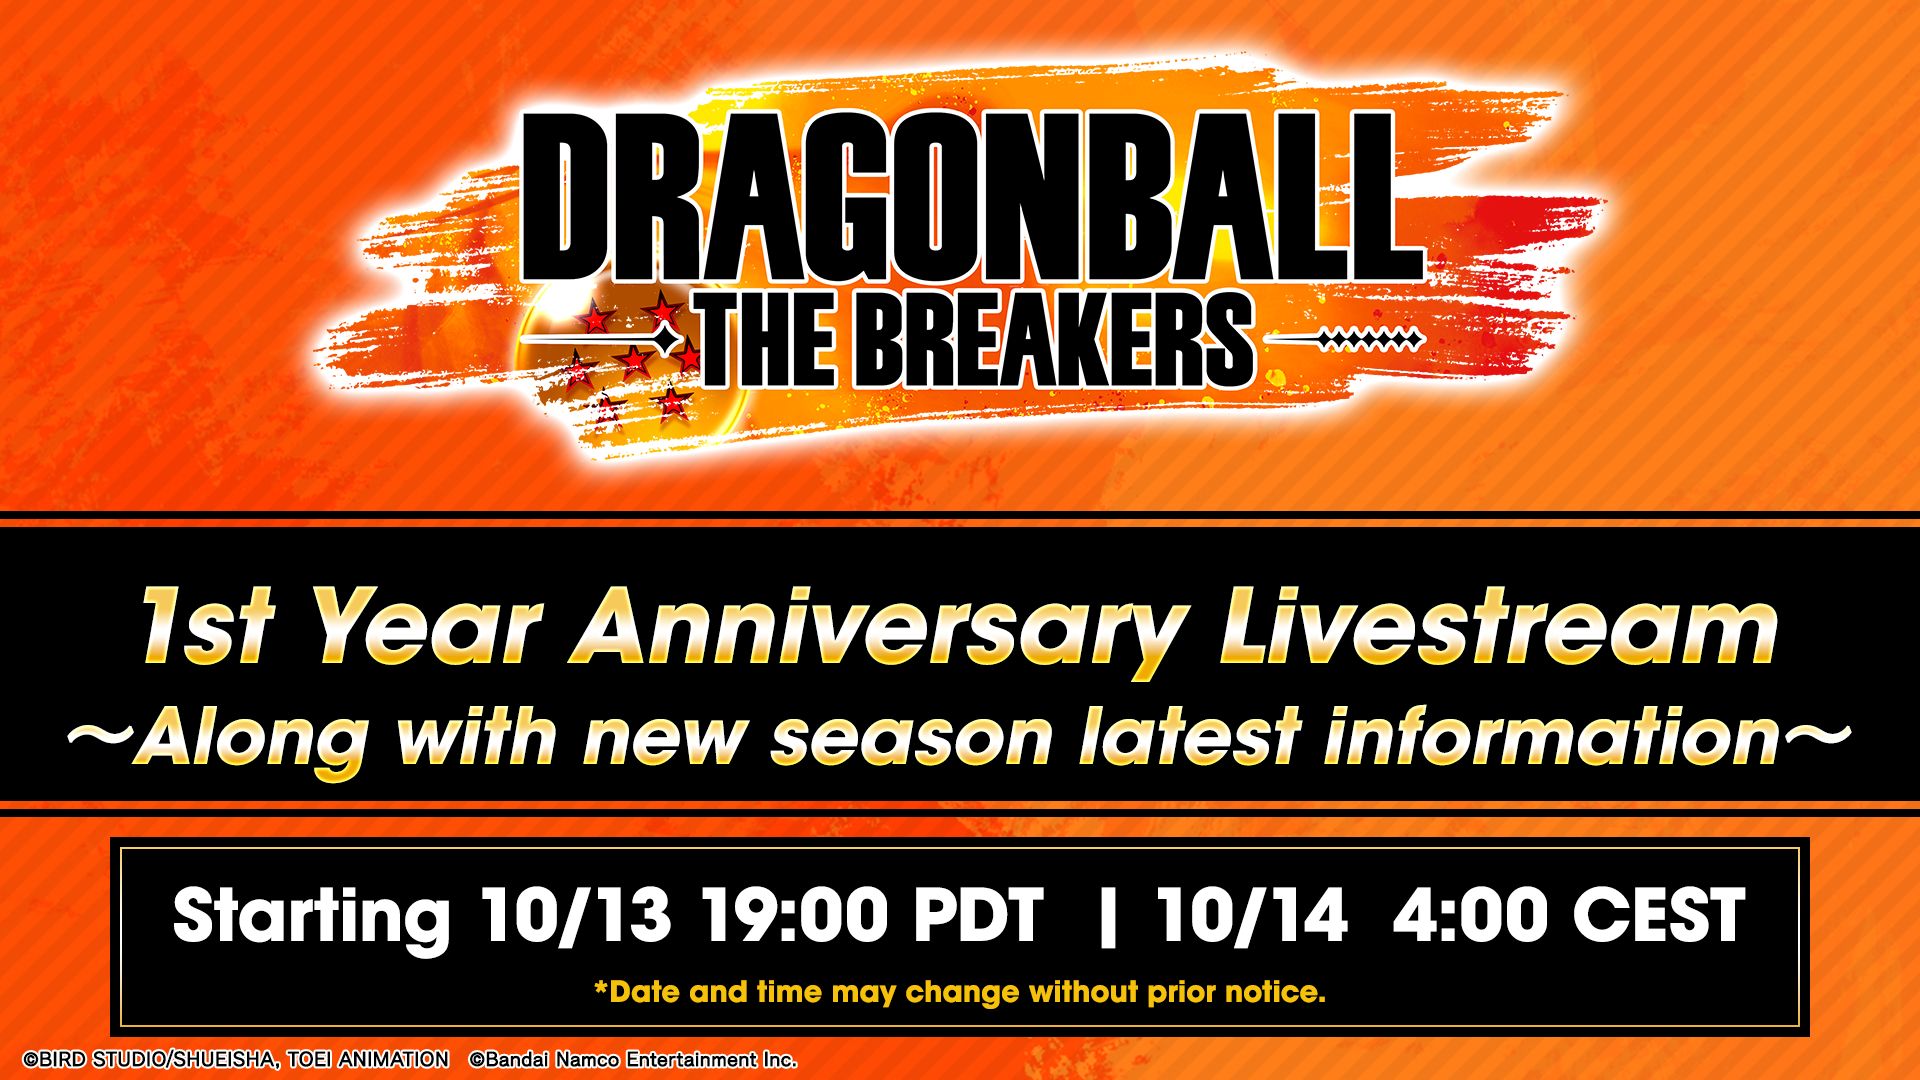 DRAGON BALL: THE BREAKERS Staffel 4 erscheint bald, um das 1. Jubiläum des Spiels zu feiern! Schalten Sie den Livestream zum 1. Jubiläum ein, um neue Informationen zu erhalten!